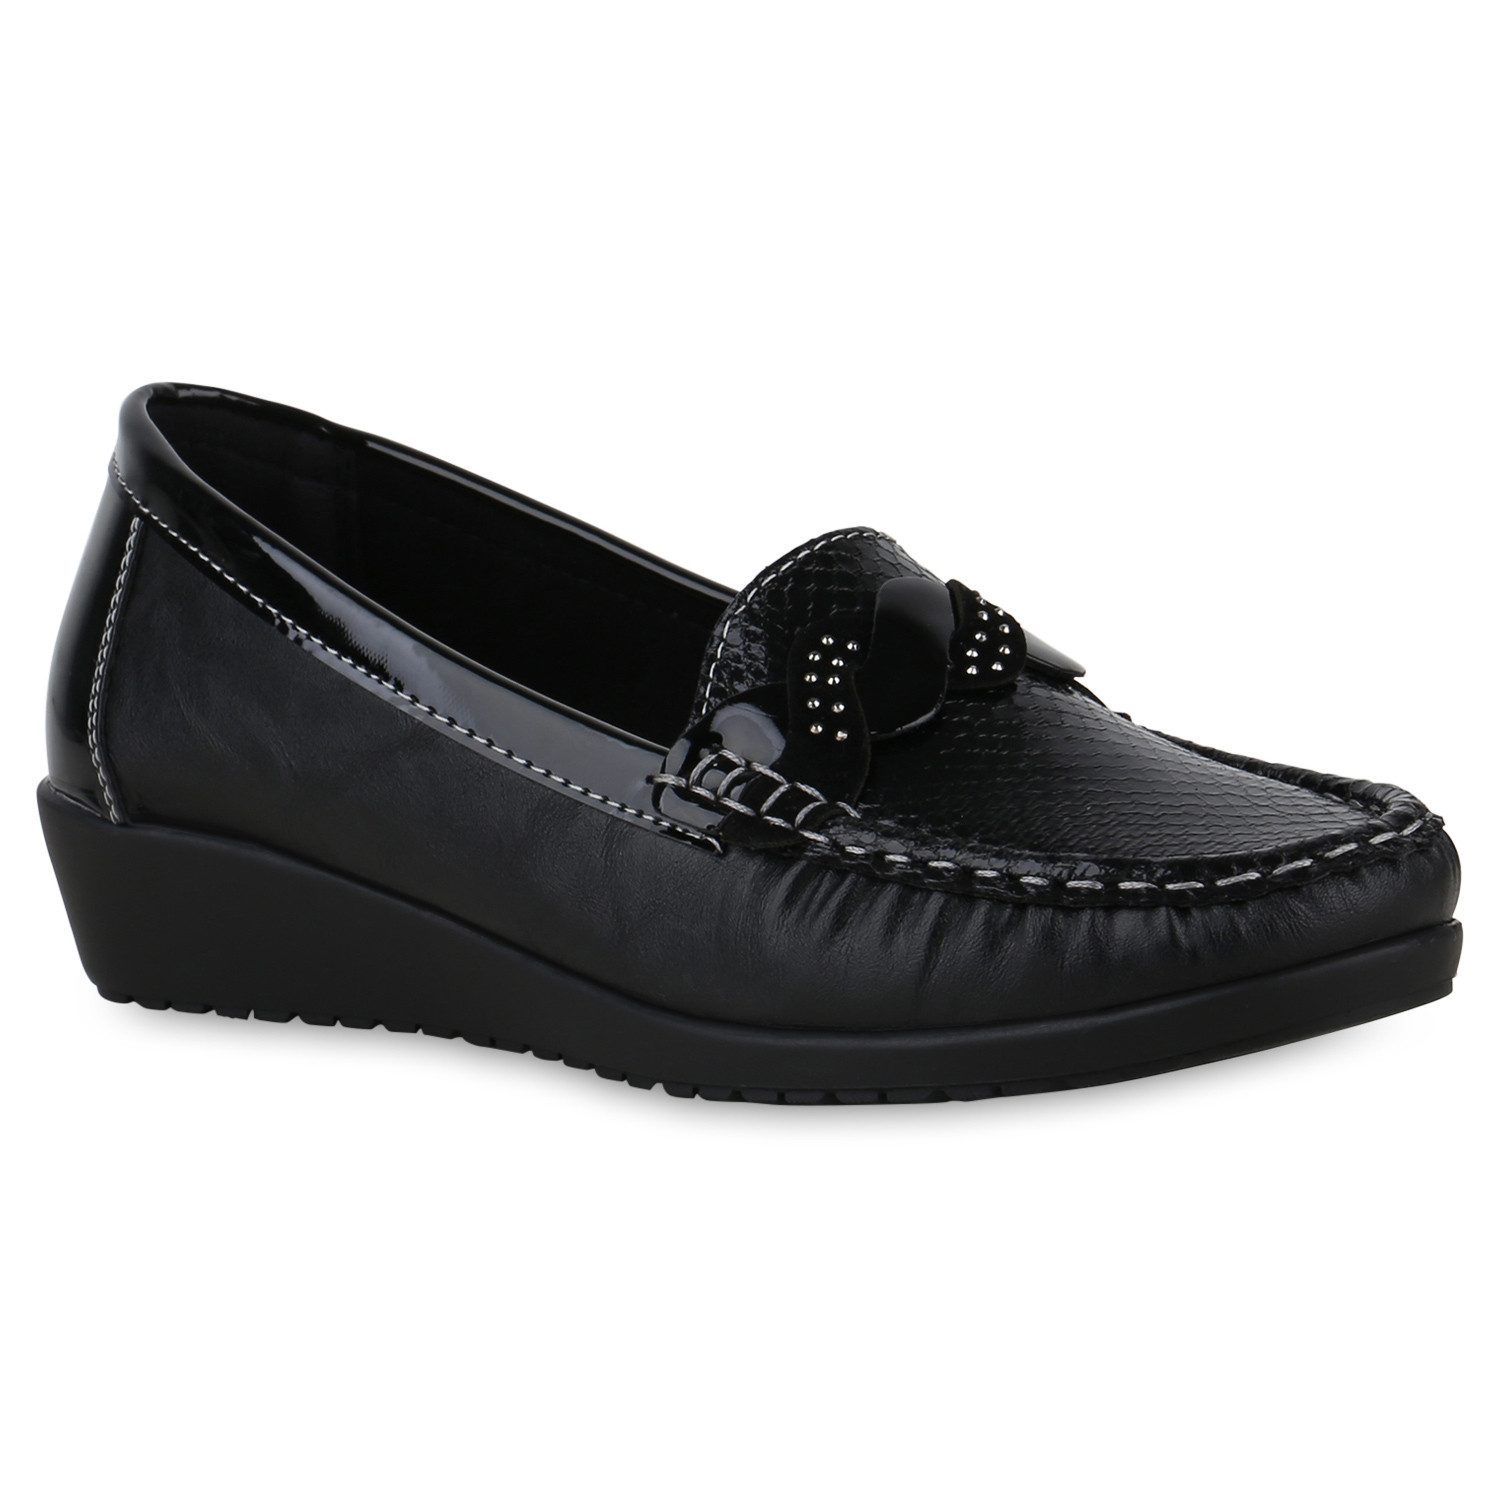 VAN HILL 841250 MO LP768-2 Damen Slippers Sneaker Schuhe